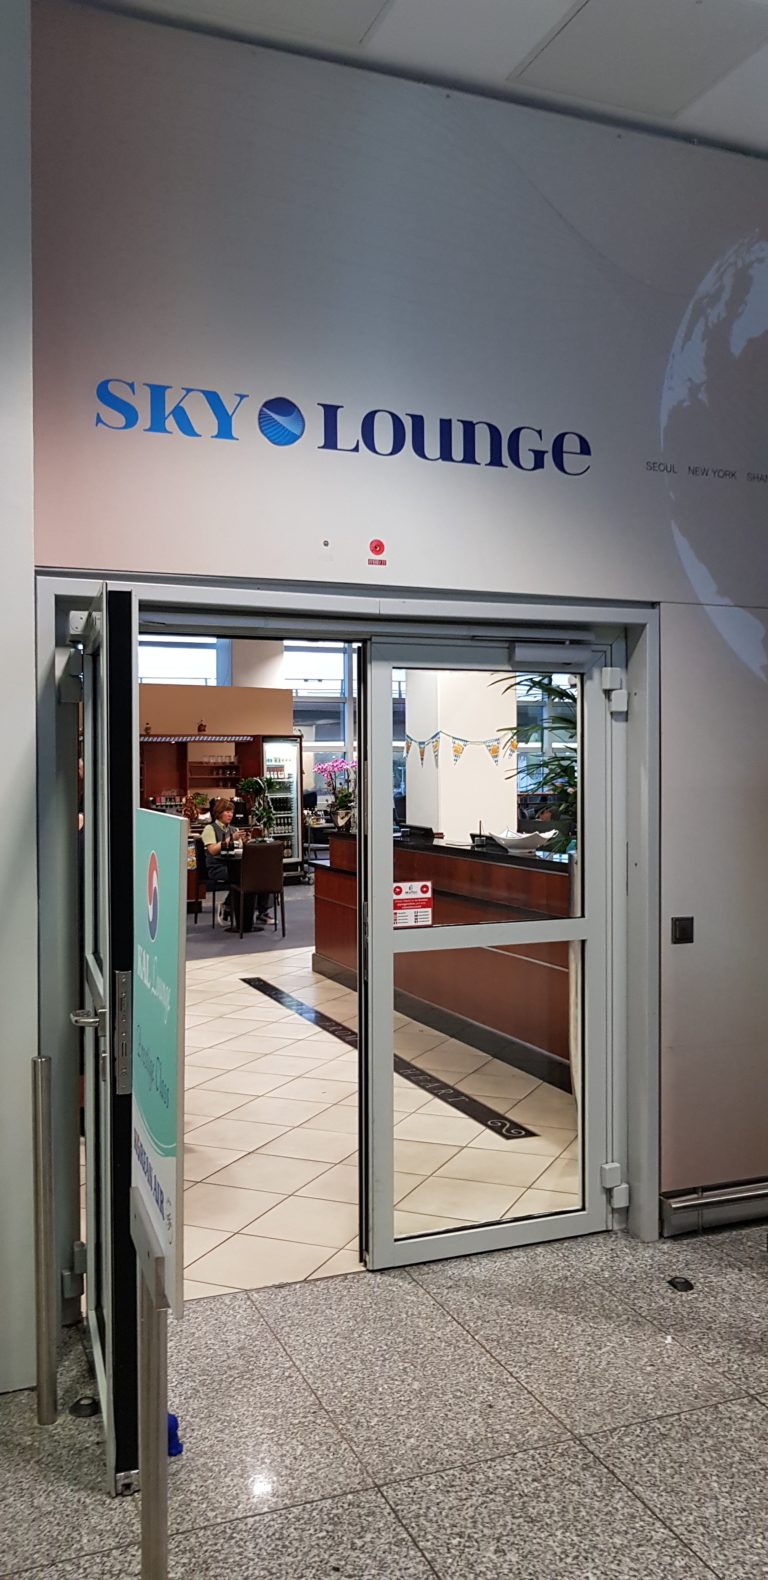 【フランクフルト空港・ラウンジ】Sky lounge